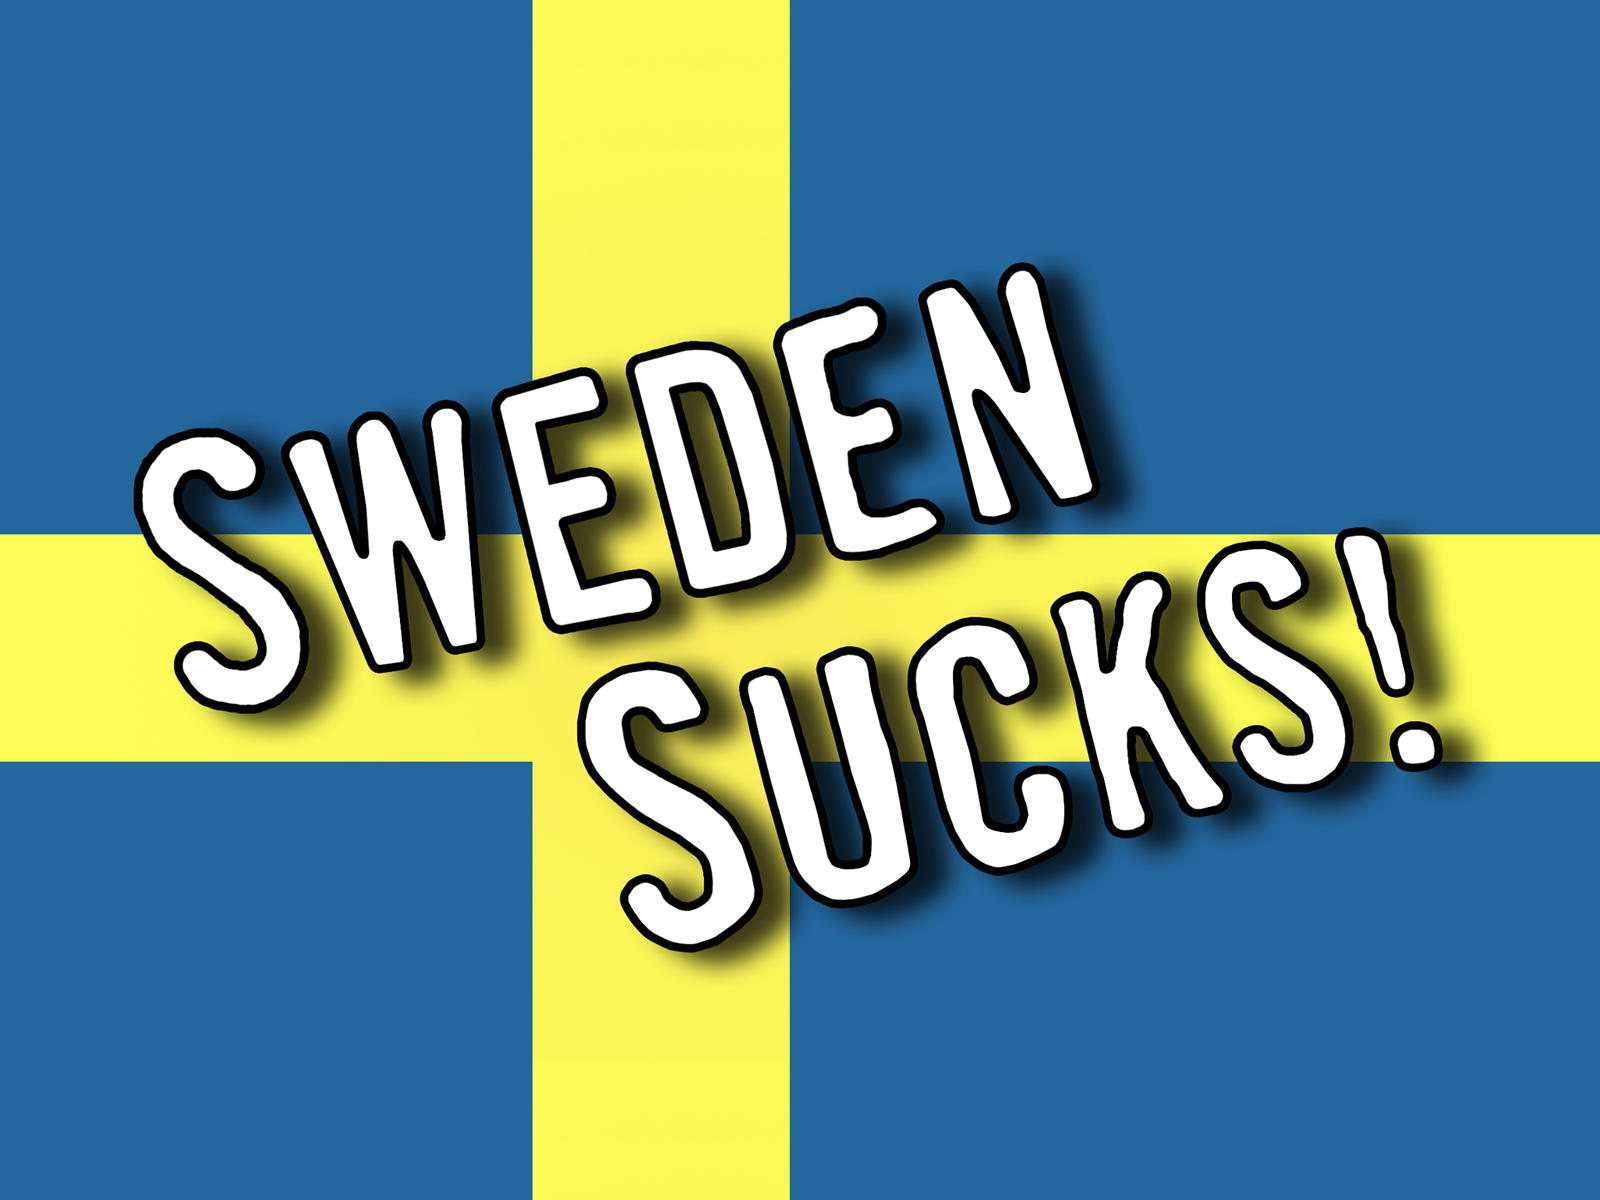 Sweden_Sucks_Wallpaper_by_h3nkku.jpg